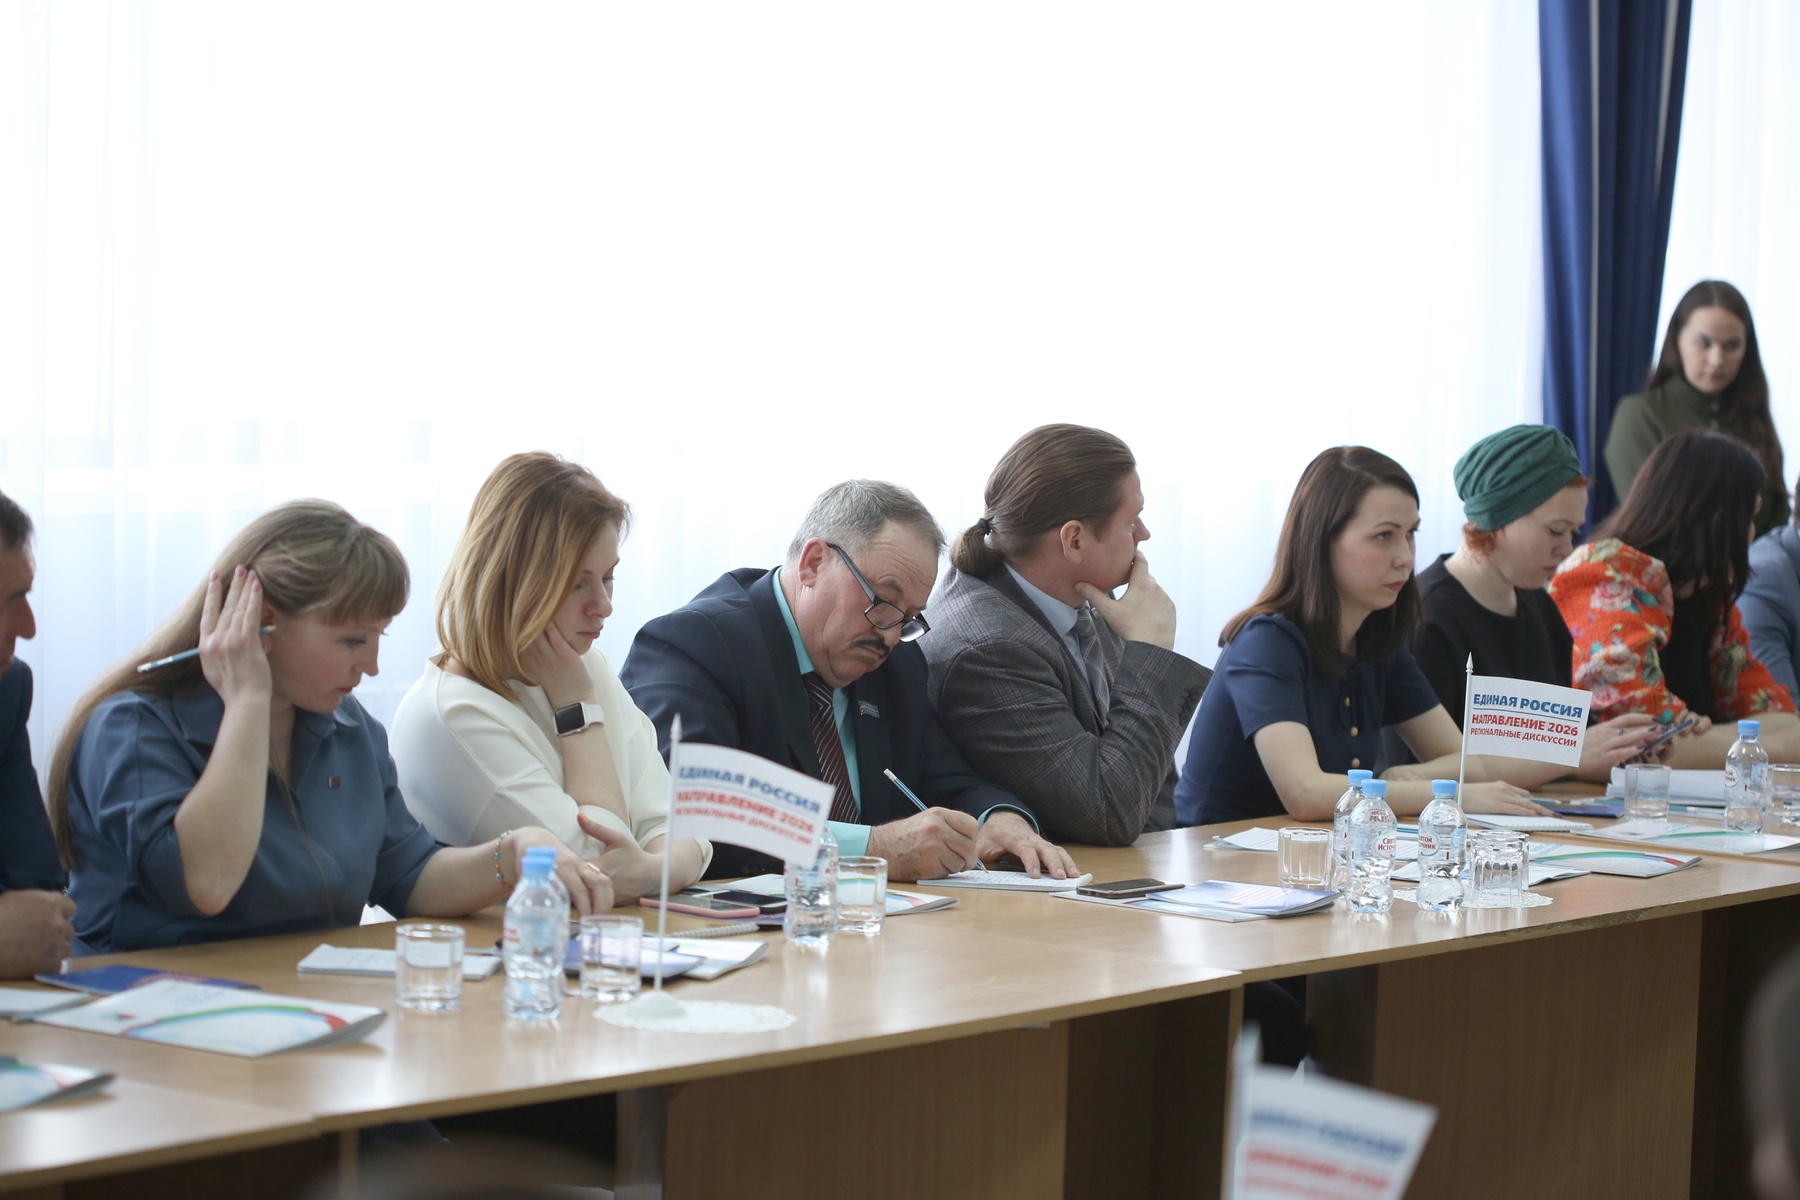  Андрей Турчак принял участие в работе дискуссионной площадки «Единая Россия. Направление 2026»